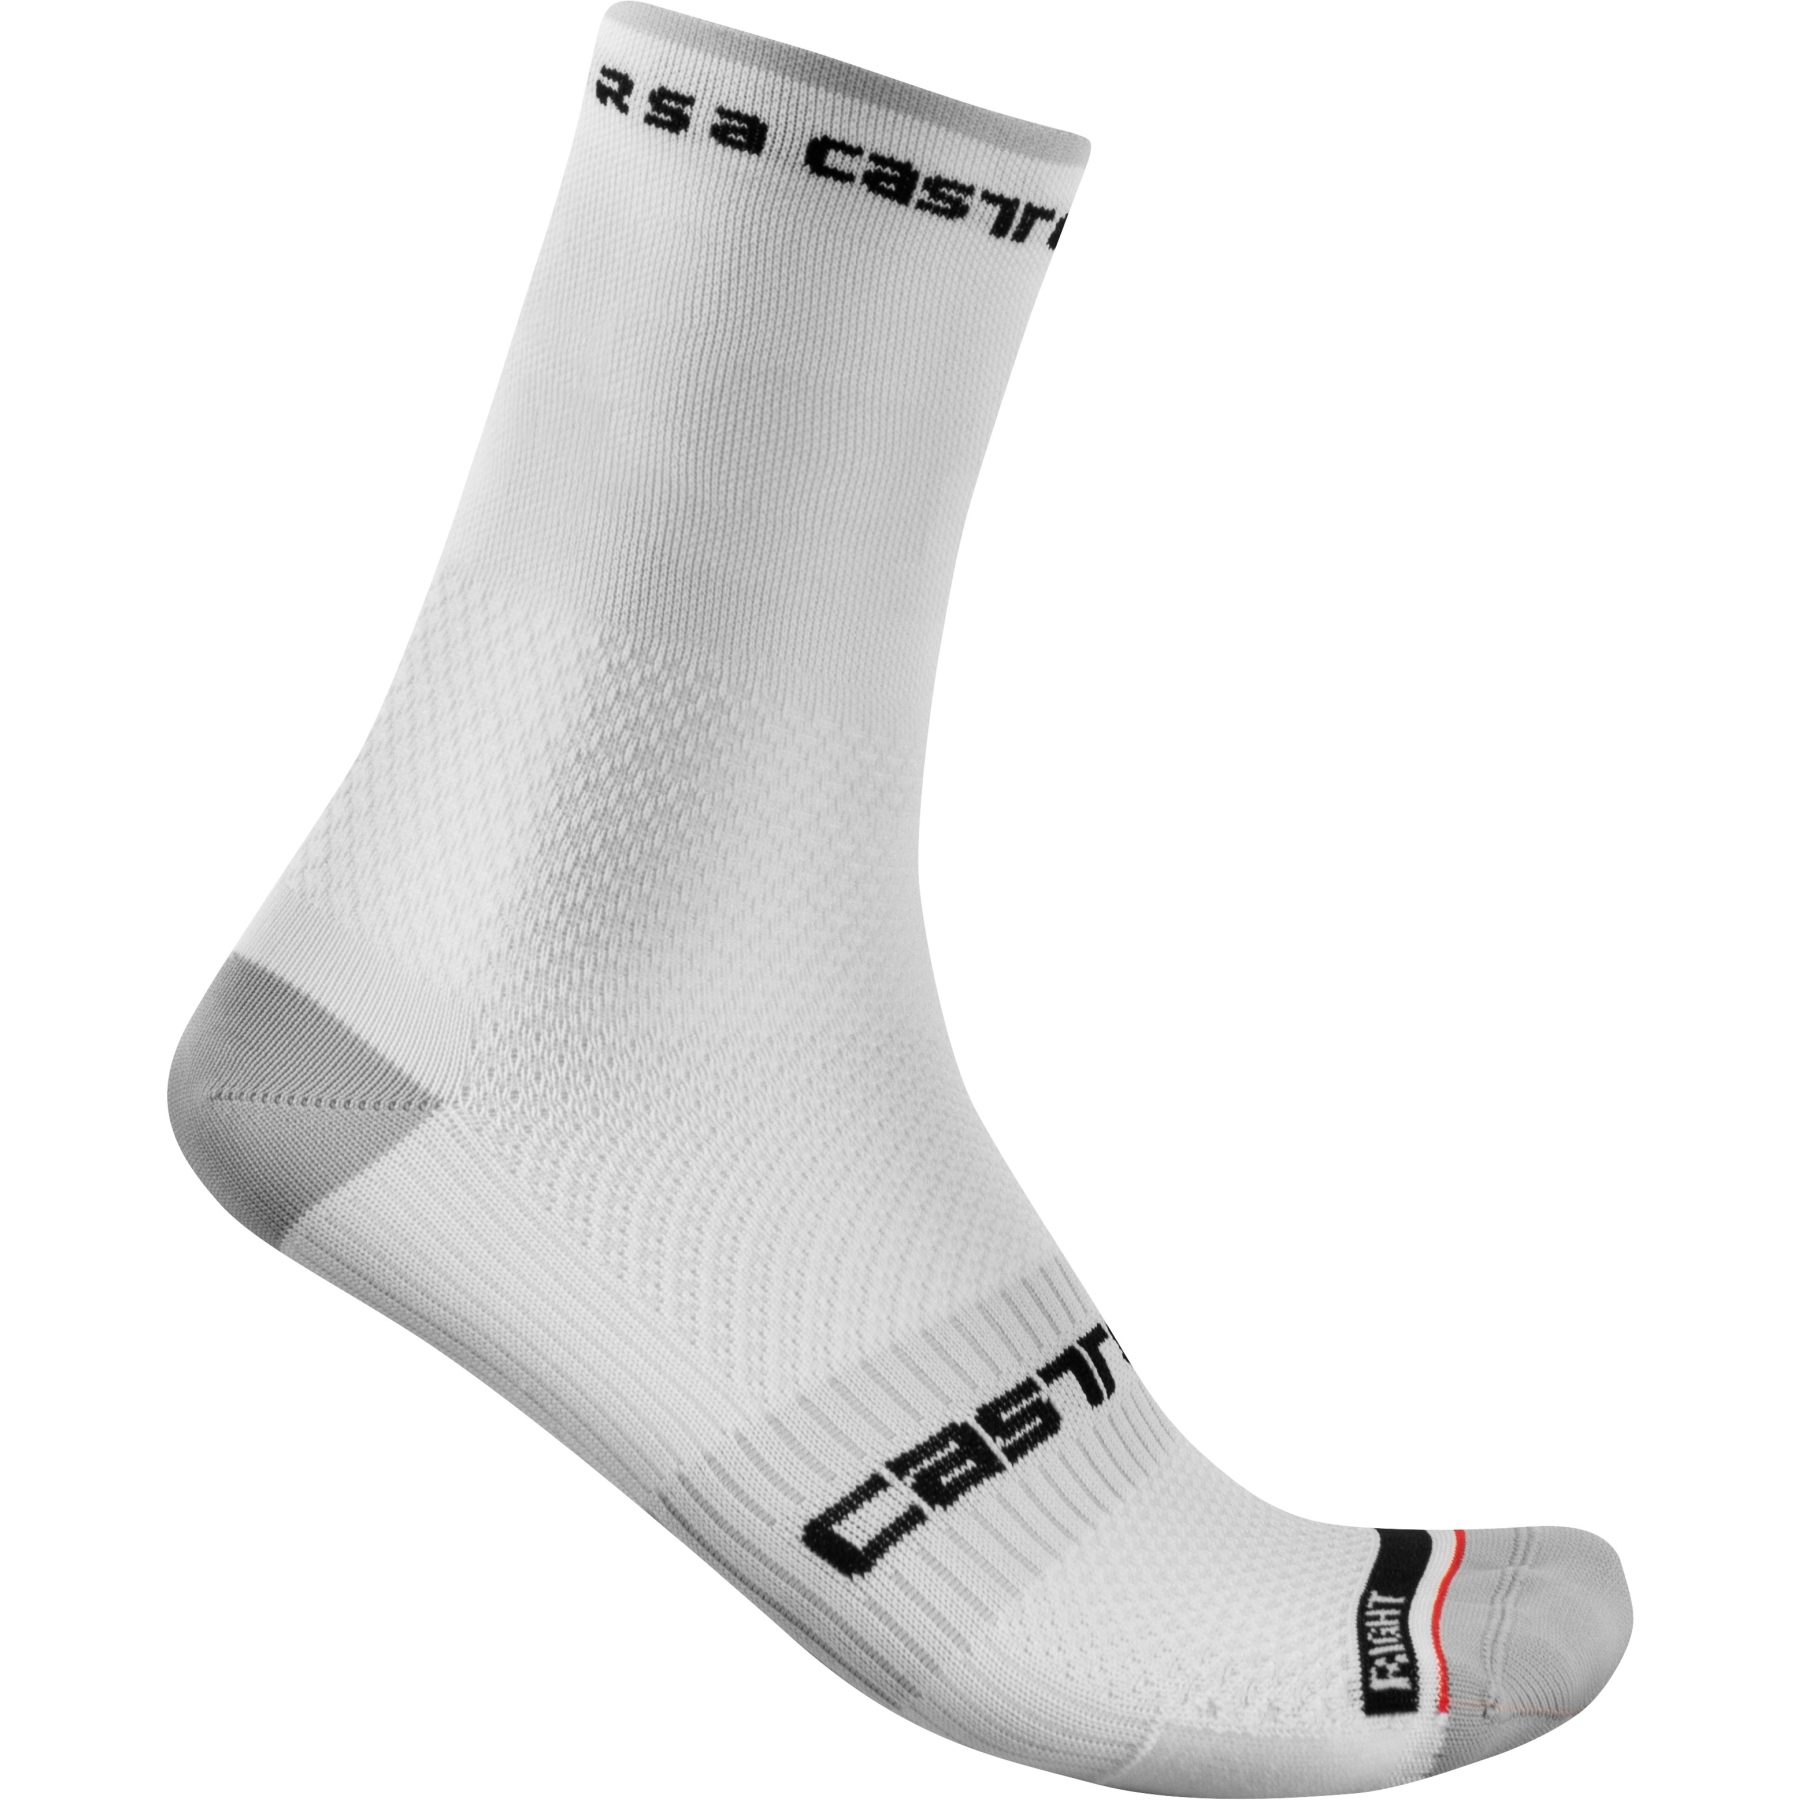 Produktbild von Castelli Rosso Corsa Pro 15 Socken - weiß 001